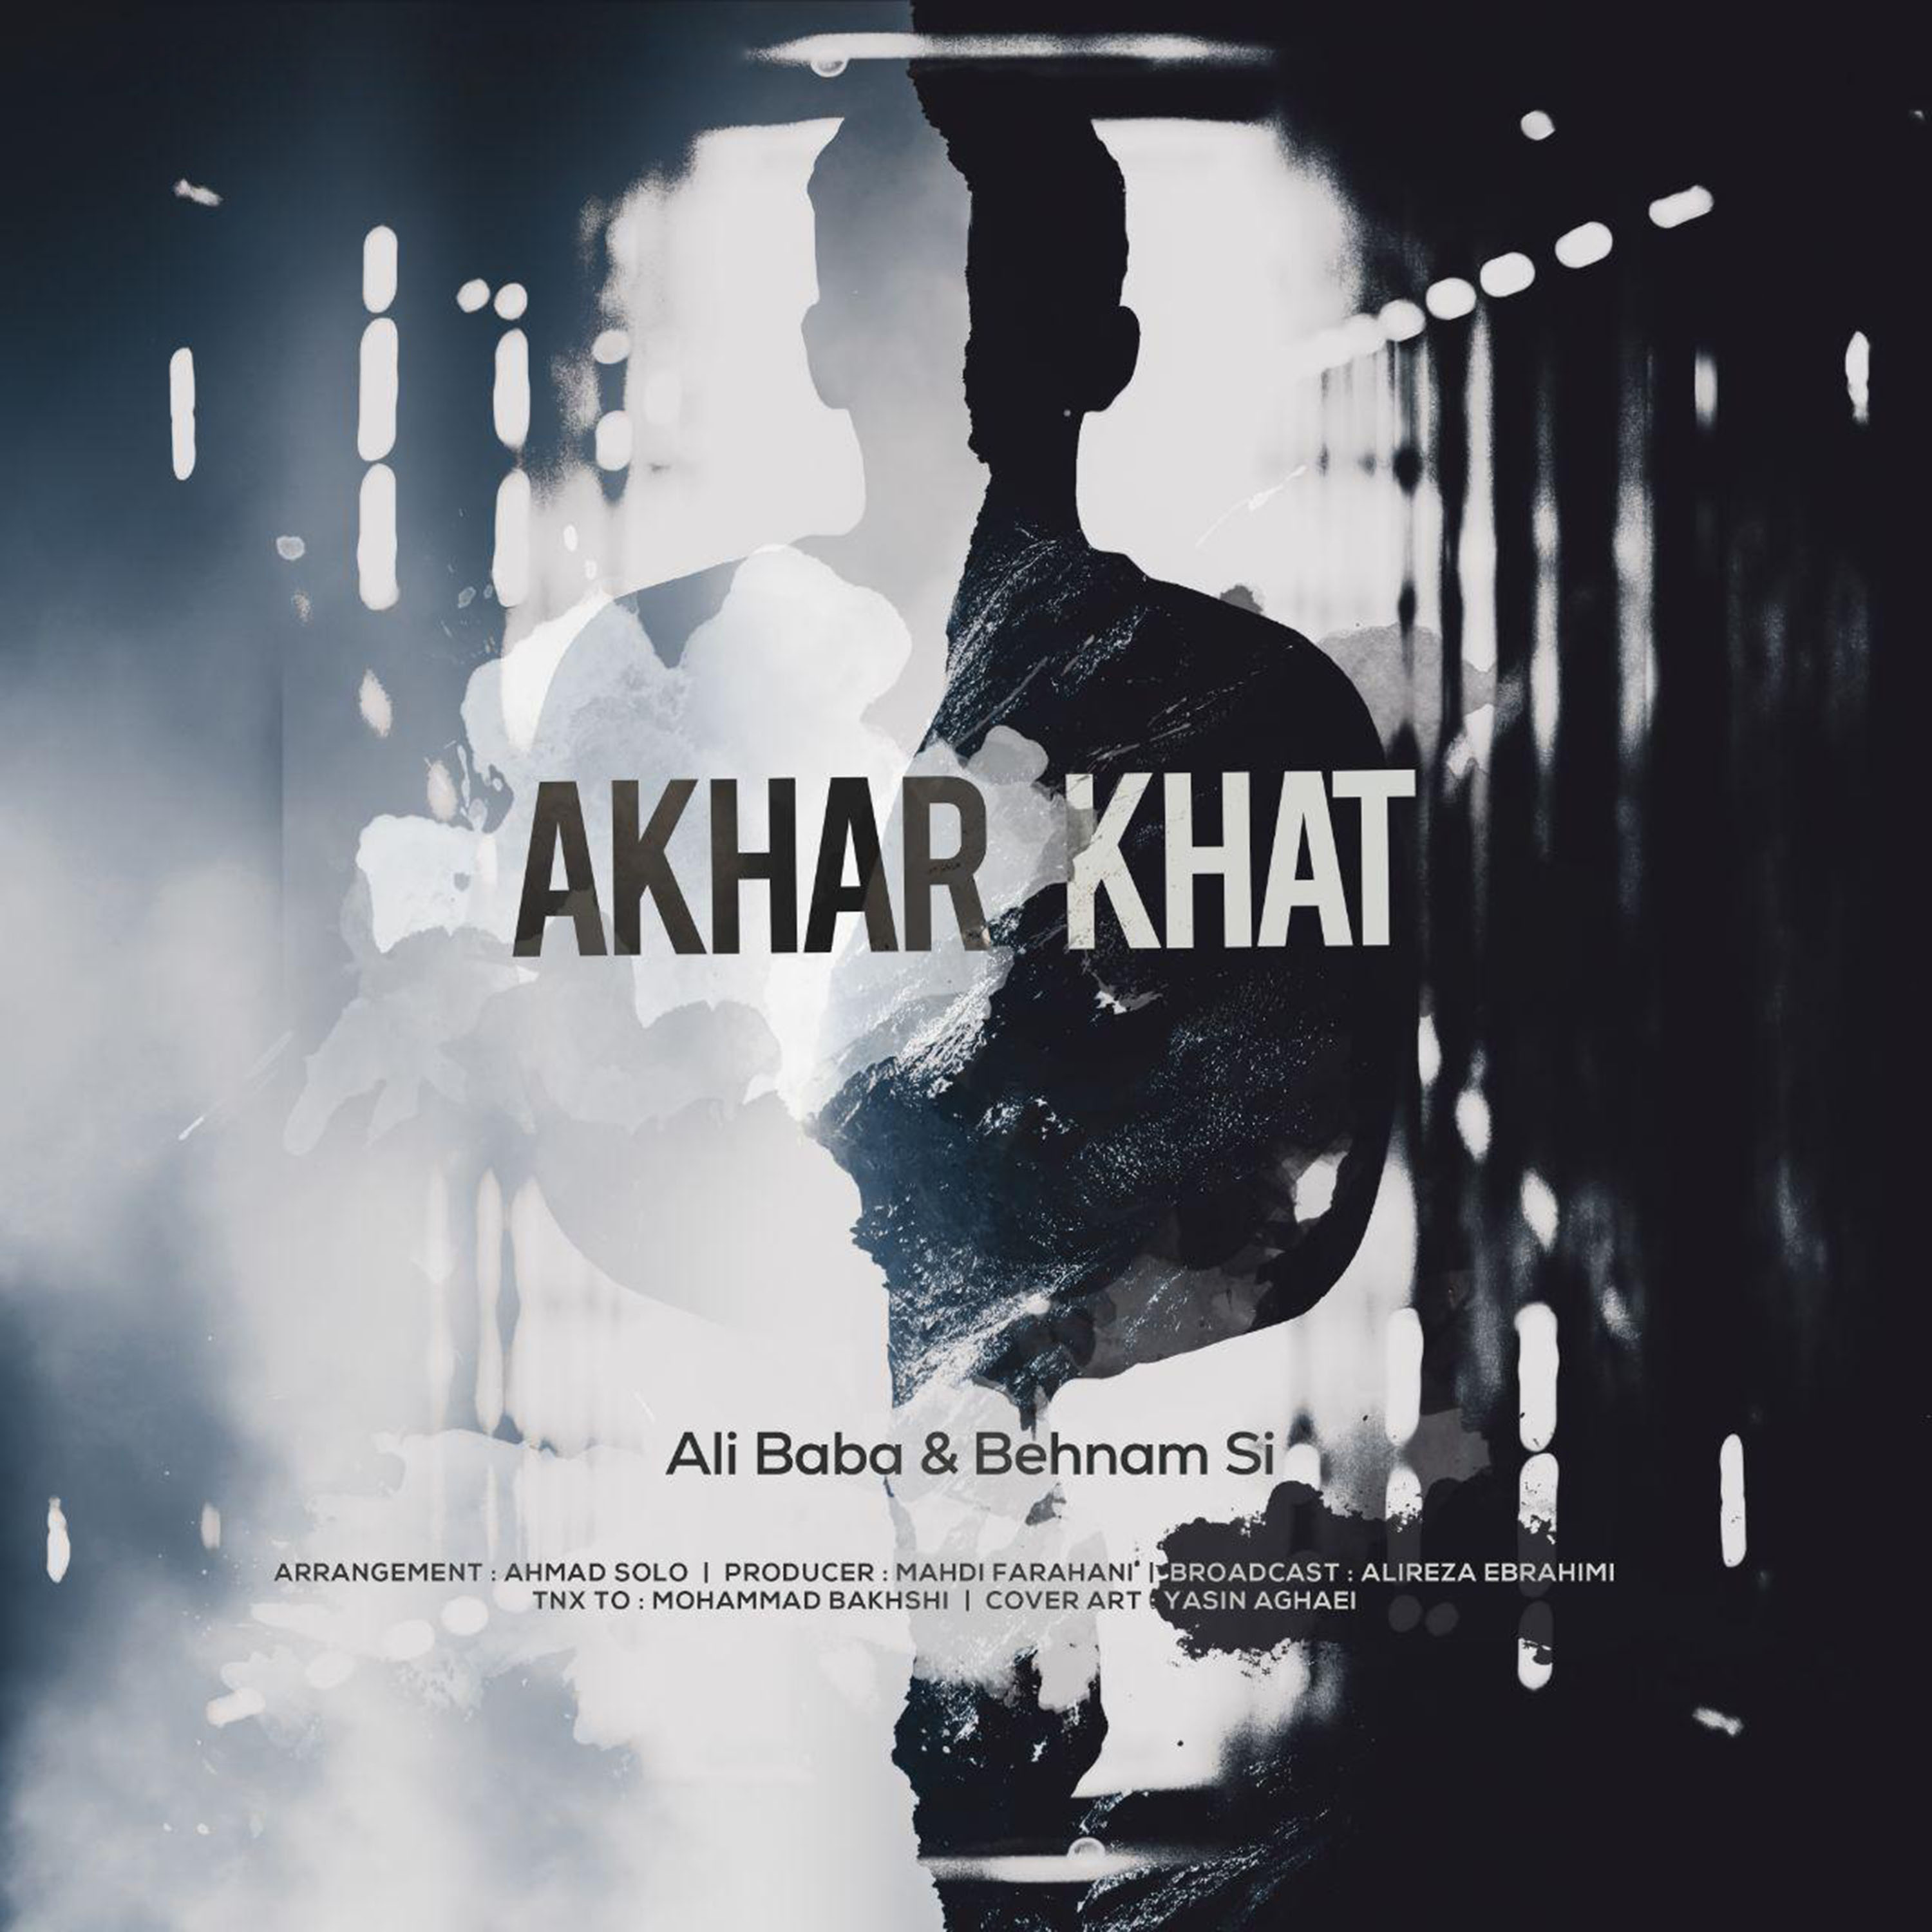  دانلود آهنگ جدید بهنام اِس آی و علی بابا - آخر خط | Download New Music By Ali Baba & Behnam Si - Akhar Khat